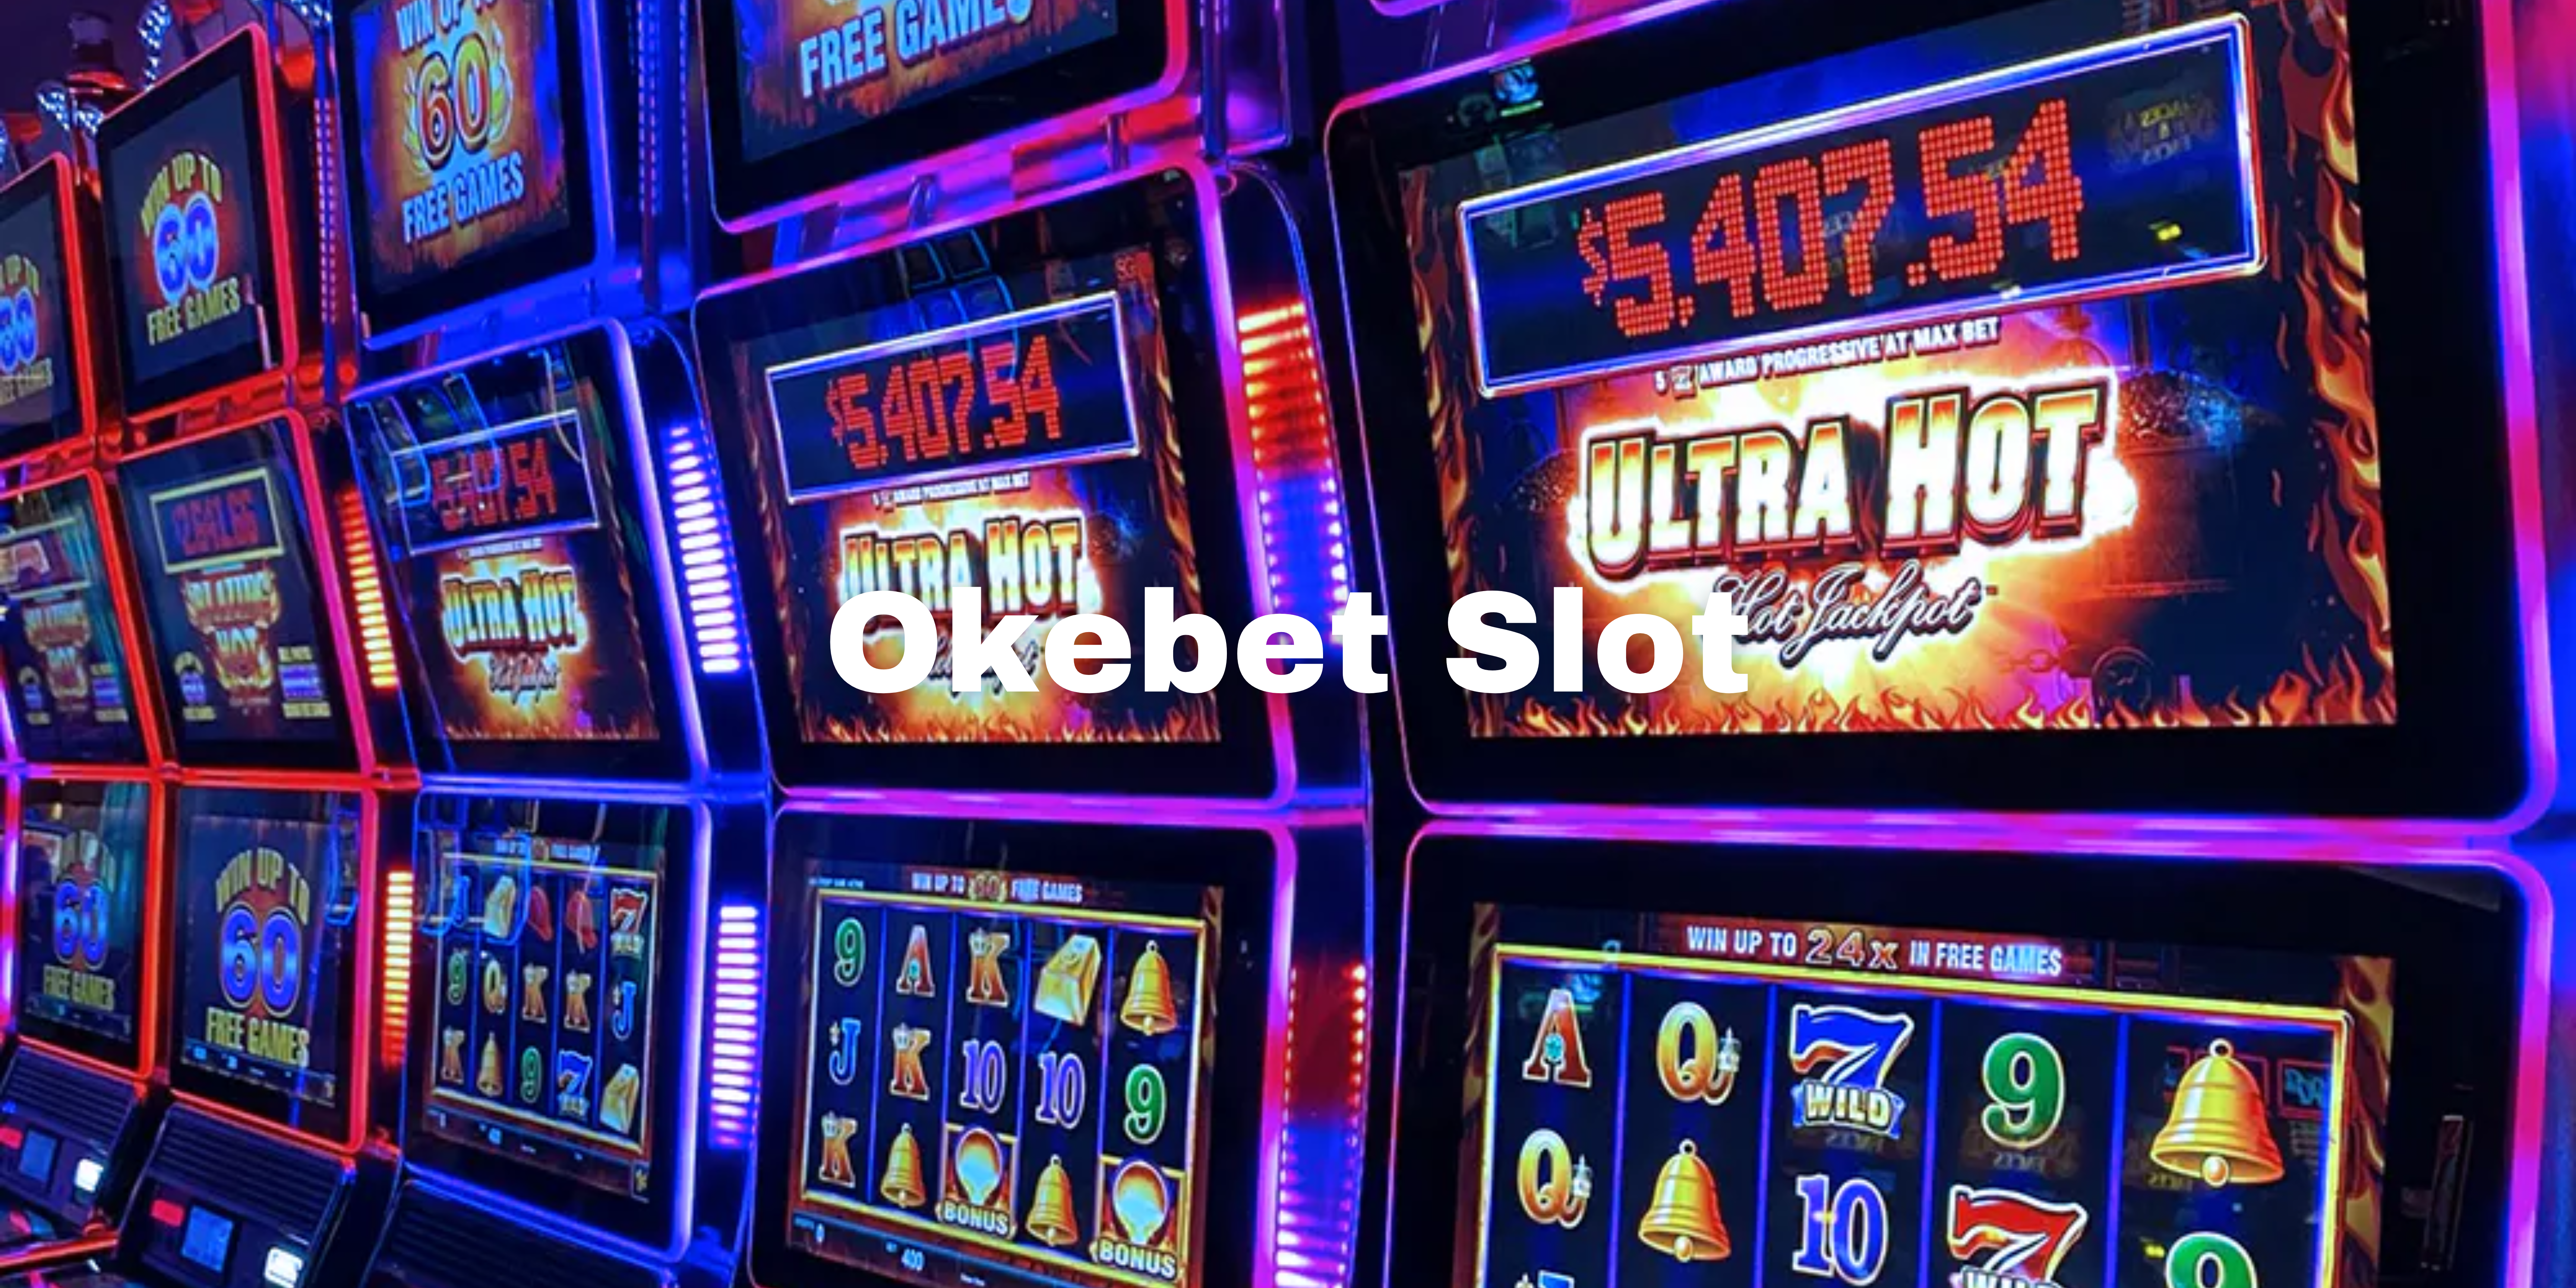 Okebet Slot